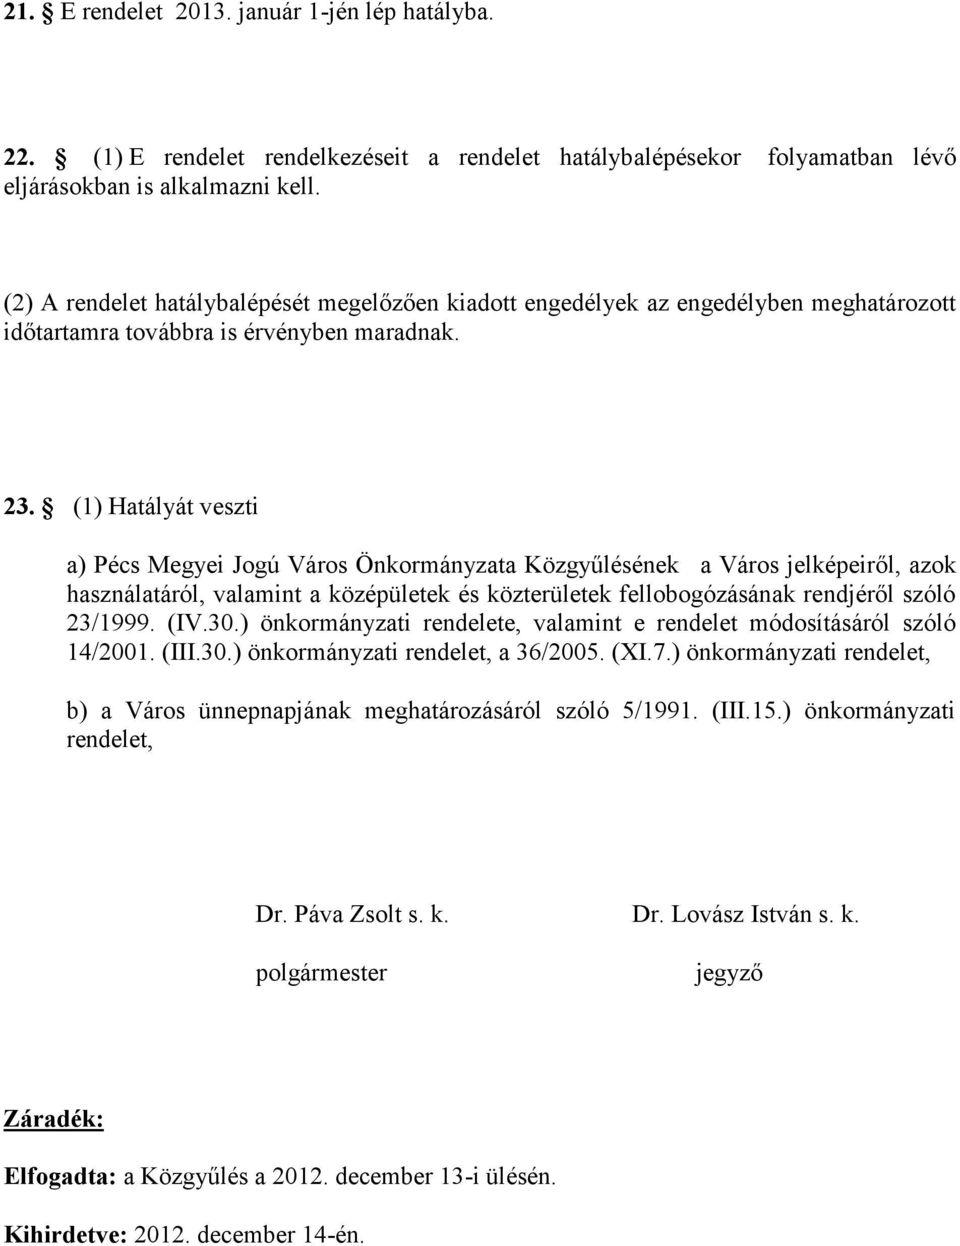 (1) Hatályát veszti a) Pécs Megyei Jogú Város Önkormányzata Közgyűlésének a Város jelképeiről, azok használatáról, valamint a középületek és közterületek fellobogózásának rendjéről szóló 23/1999. (IV.